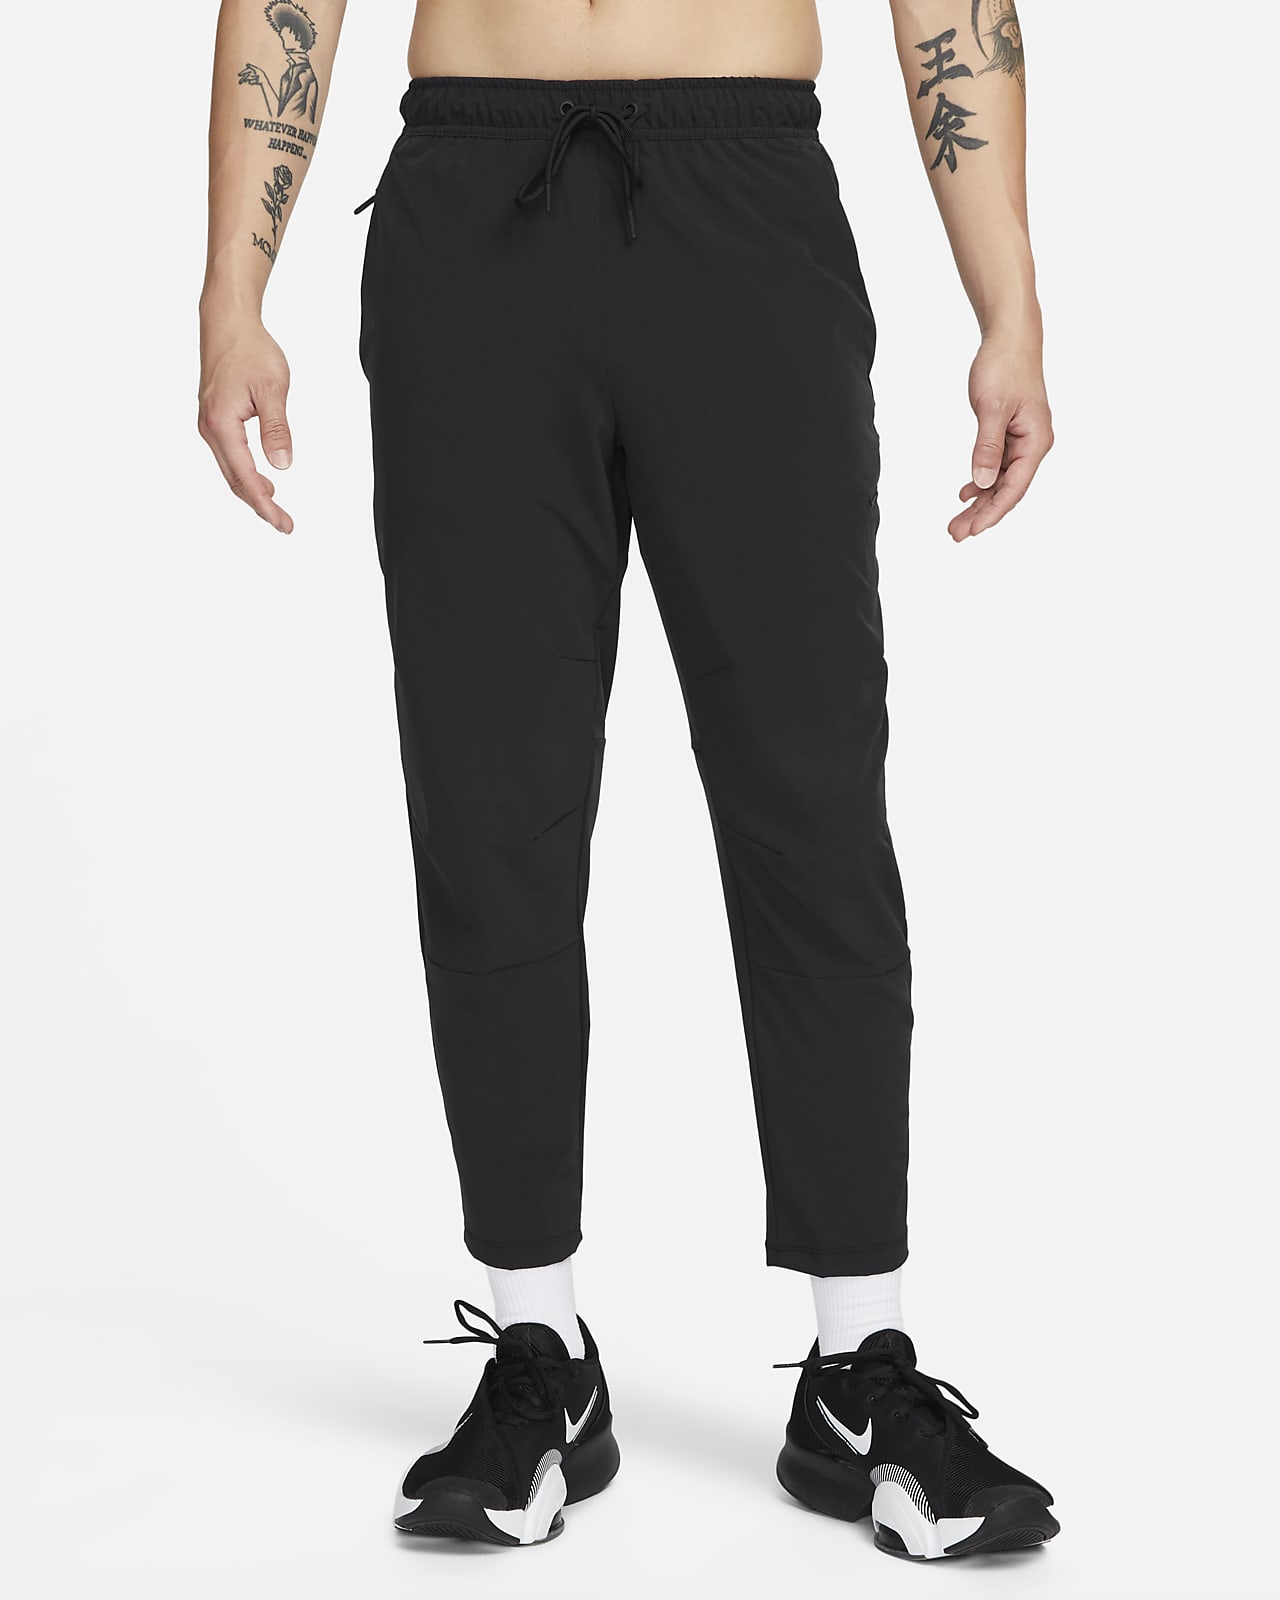 Nike Men's Large Straight Leg Sweatpants Gray Dri-fit